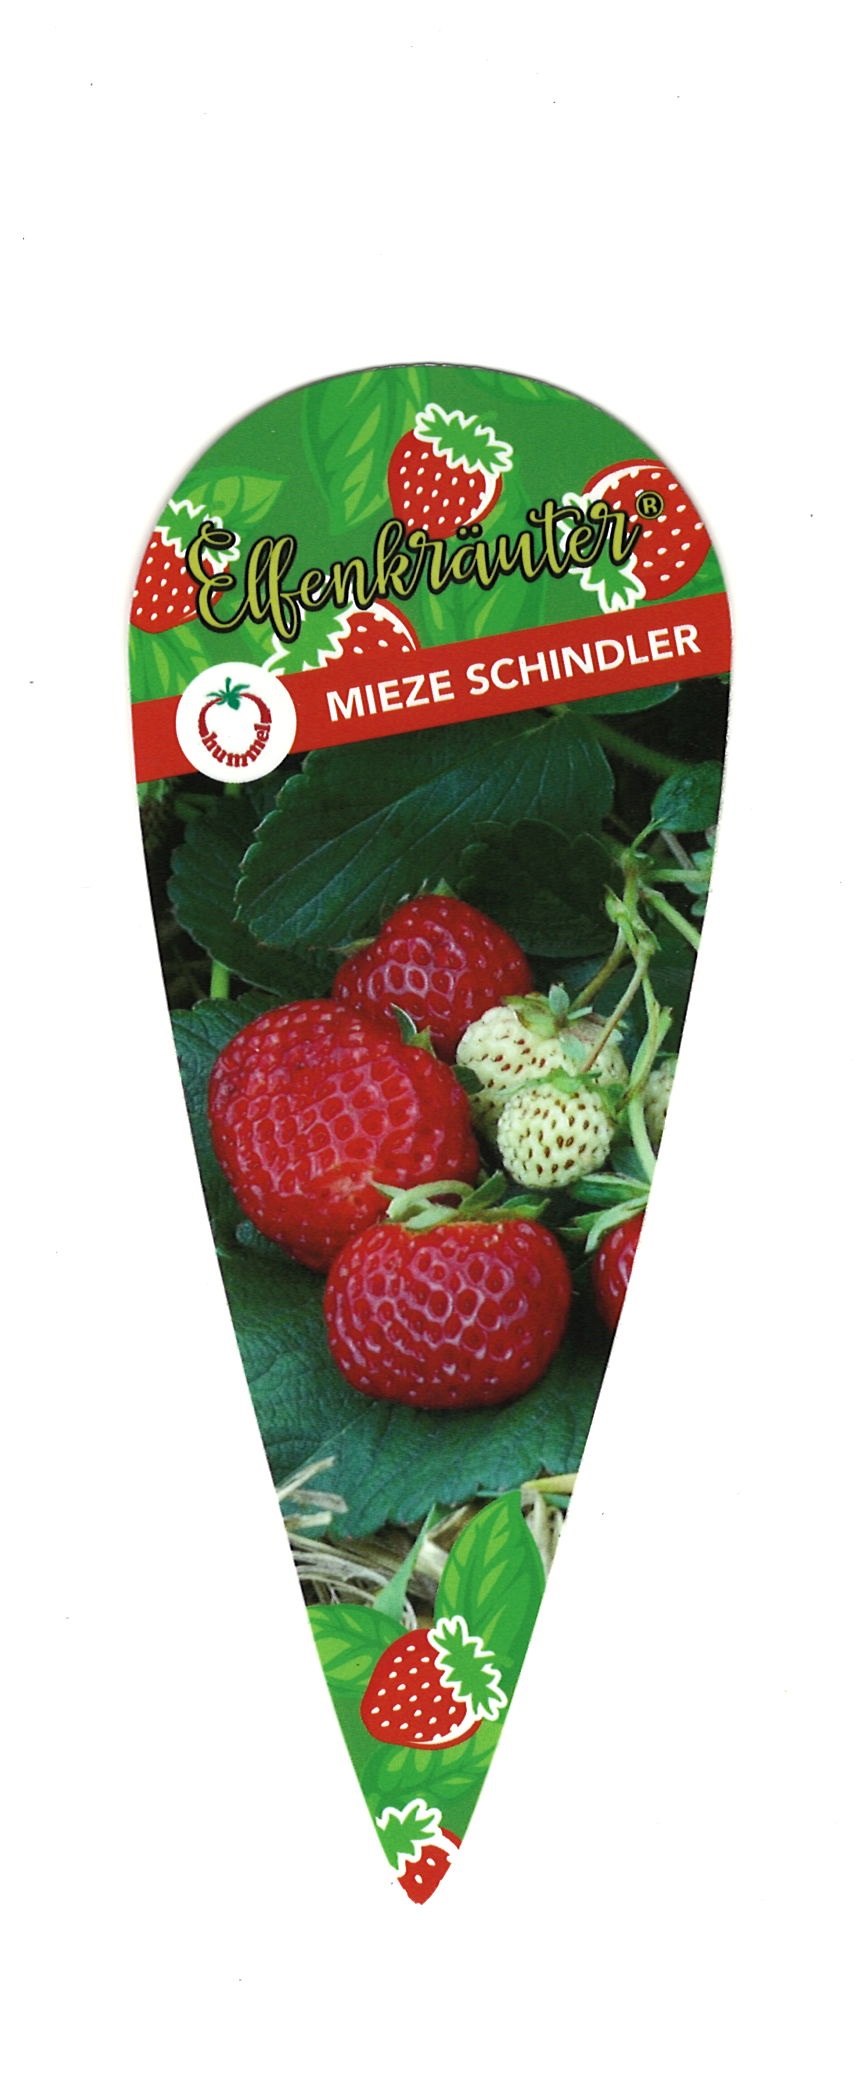 Stecketiketten Erdbeere Mieze Schindler